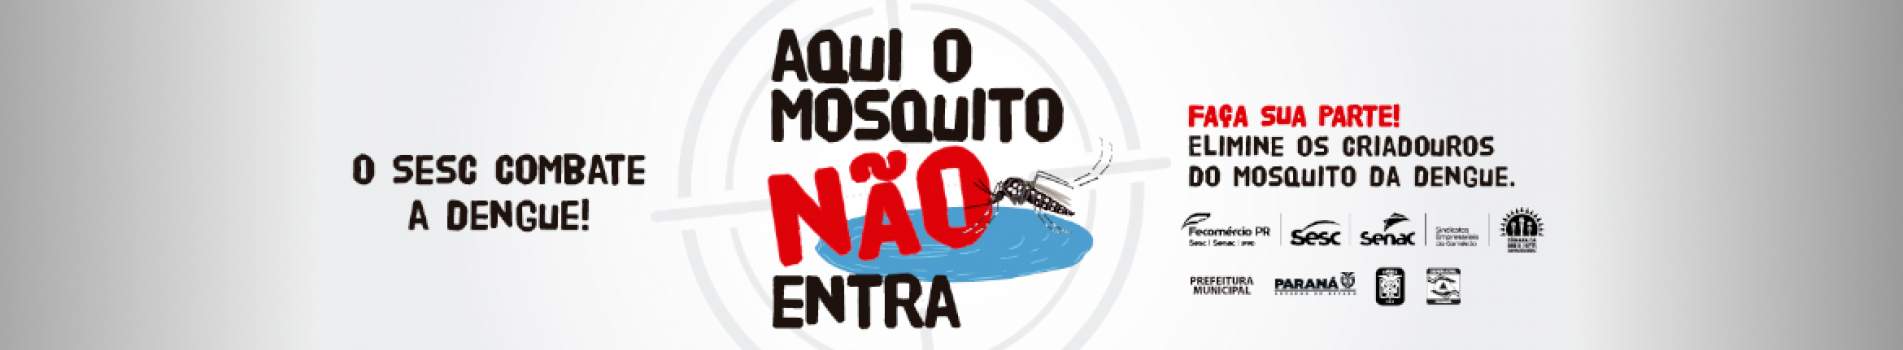 Campanha dengue